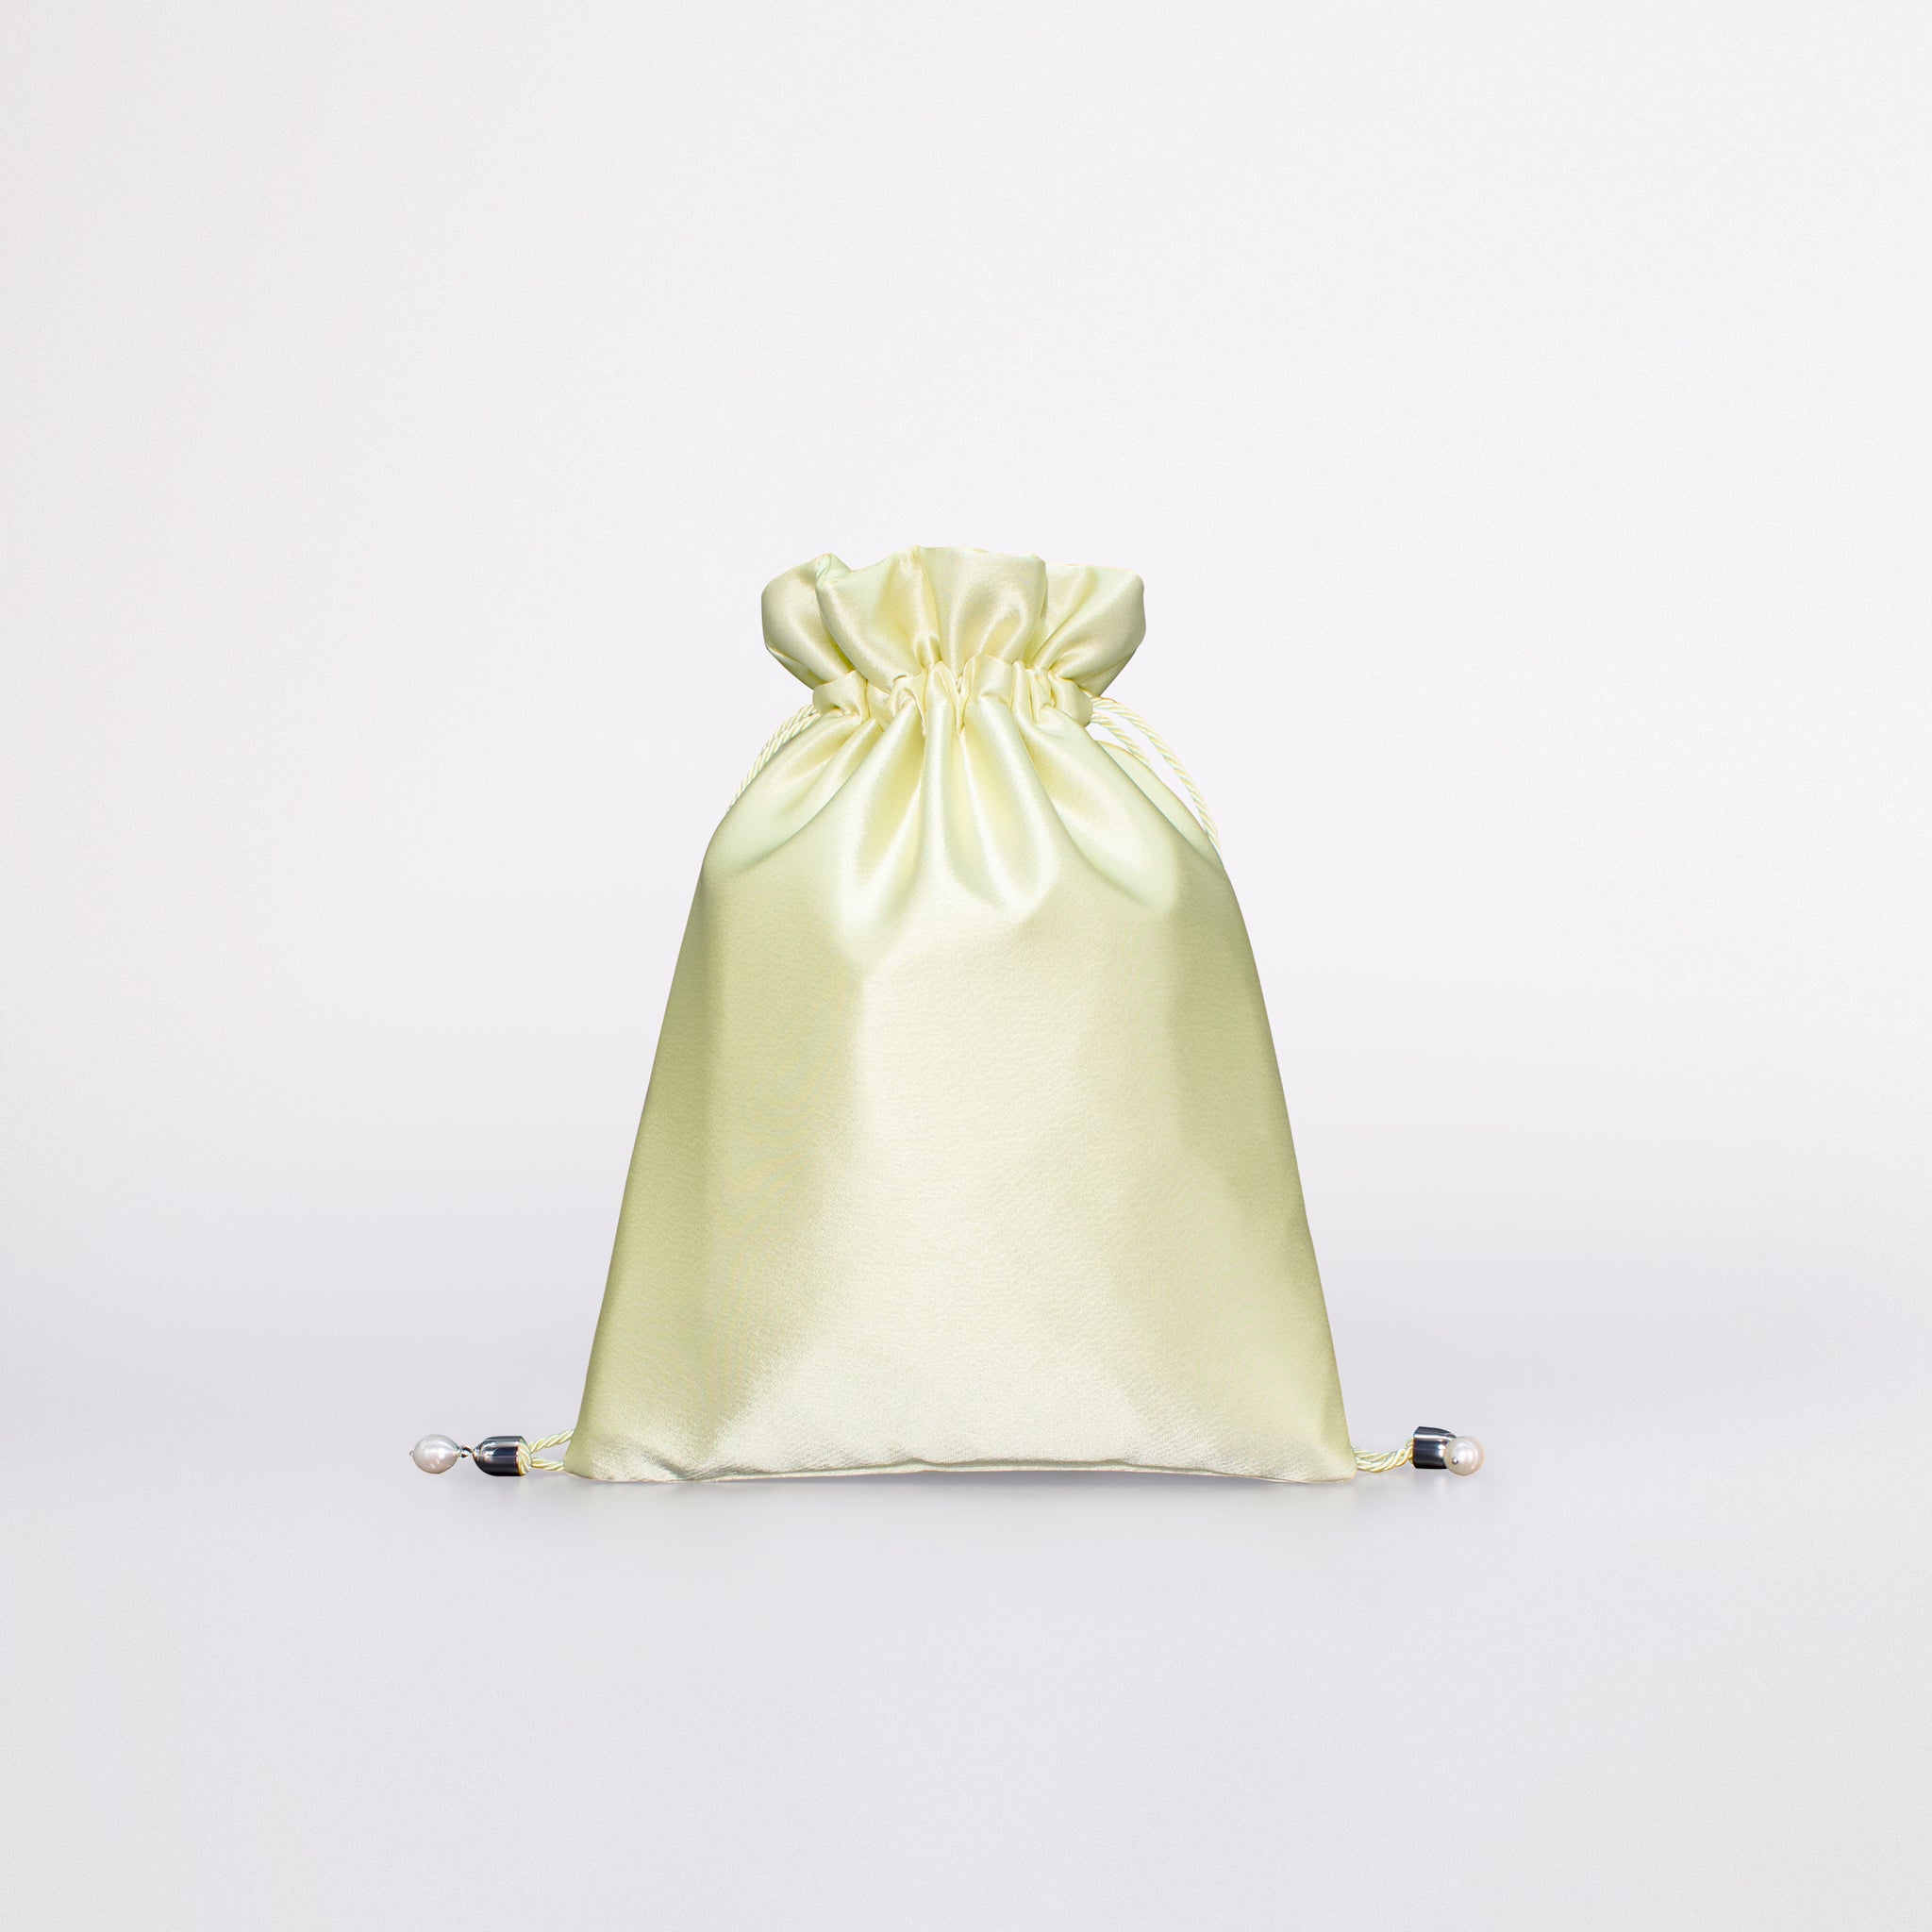 Giulia flat bag in colorazione pastel lime